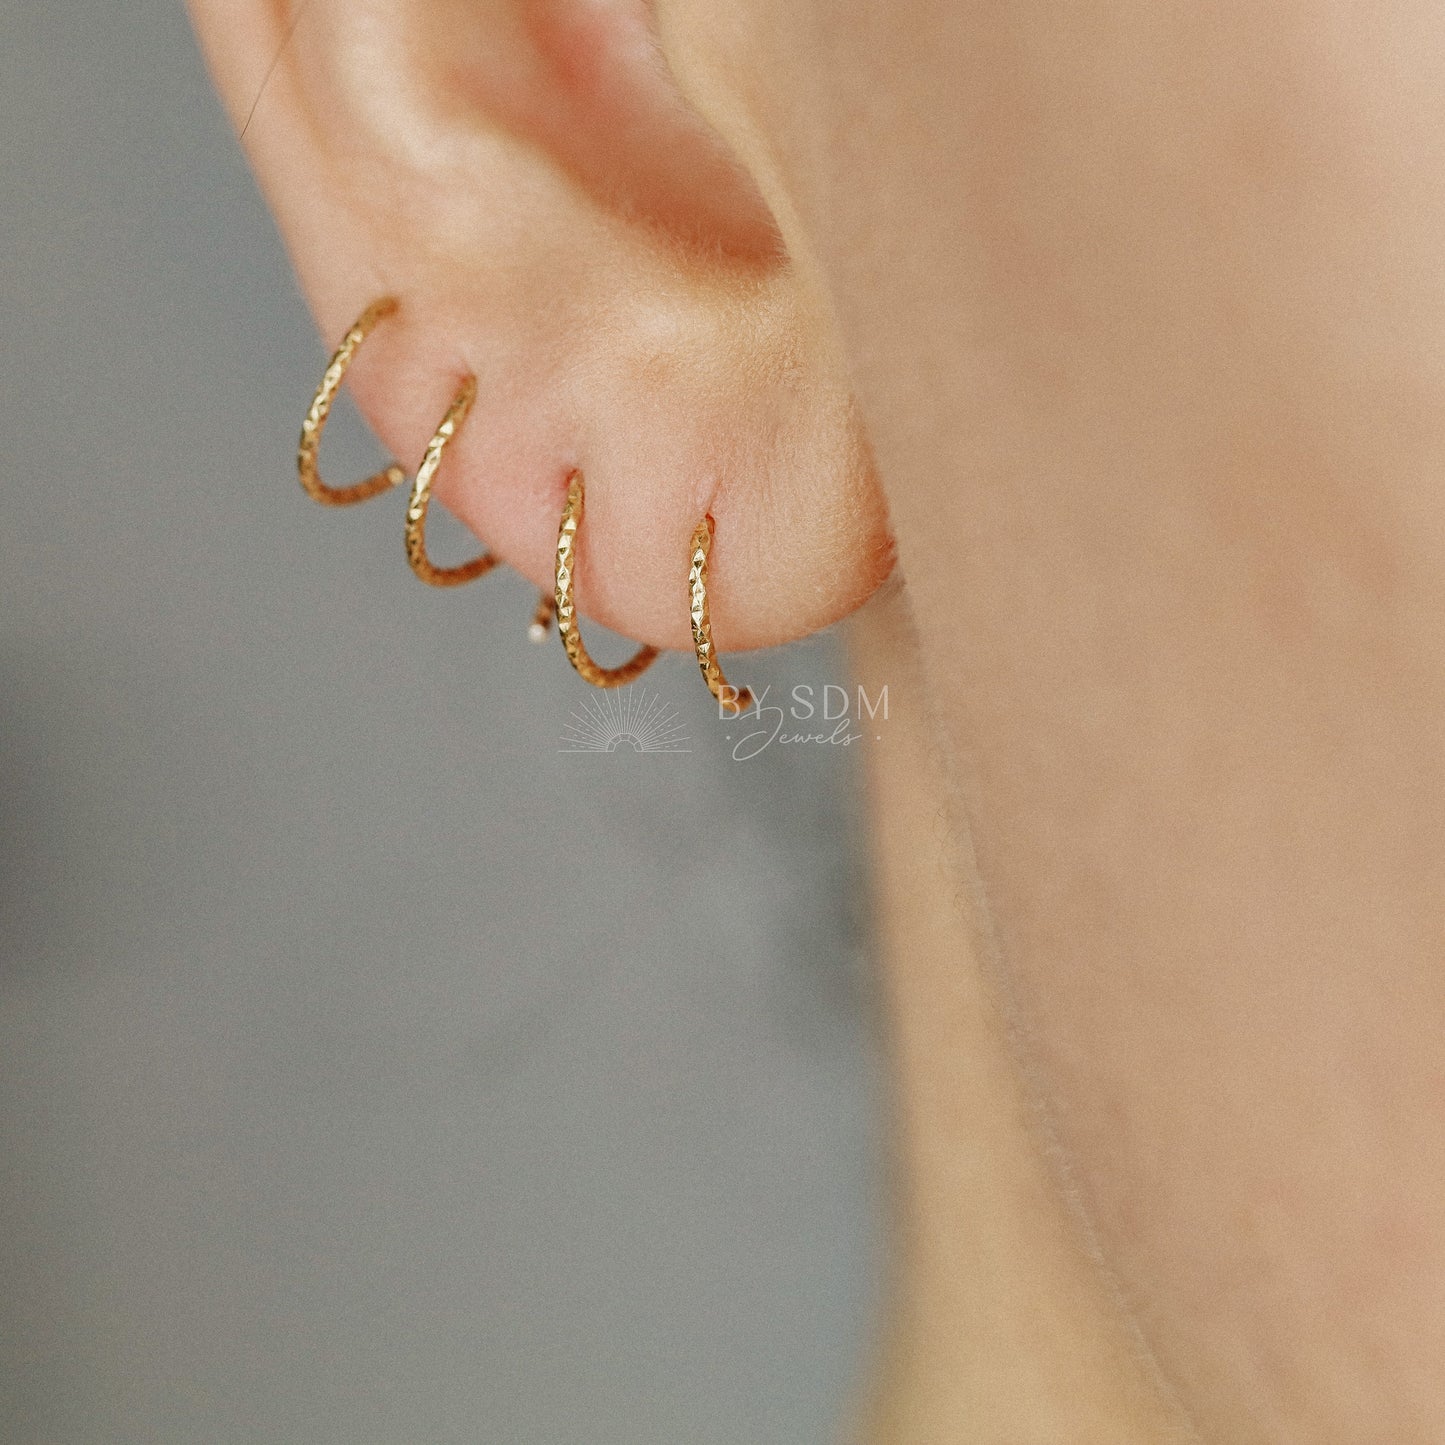 Double Hoop Earrings Spiral Loop Earrings Threader Hoops Minimalist Earrings Spiral Open Hoop Earrings 18k Gold plated Diamond Cut Earrings